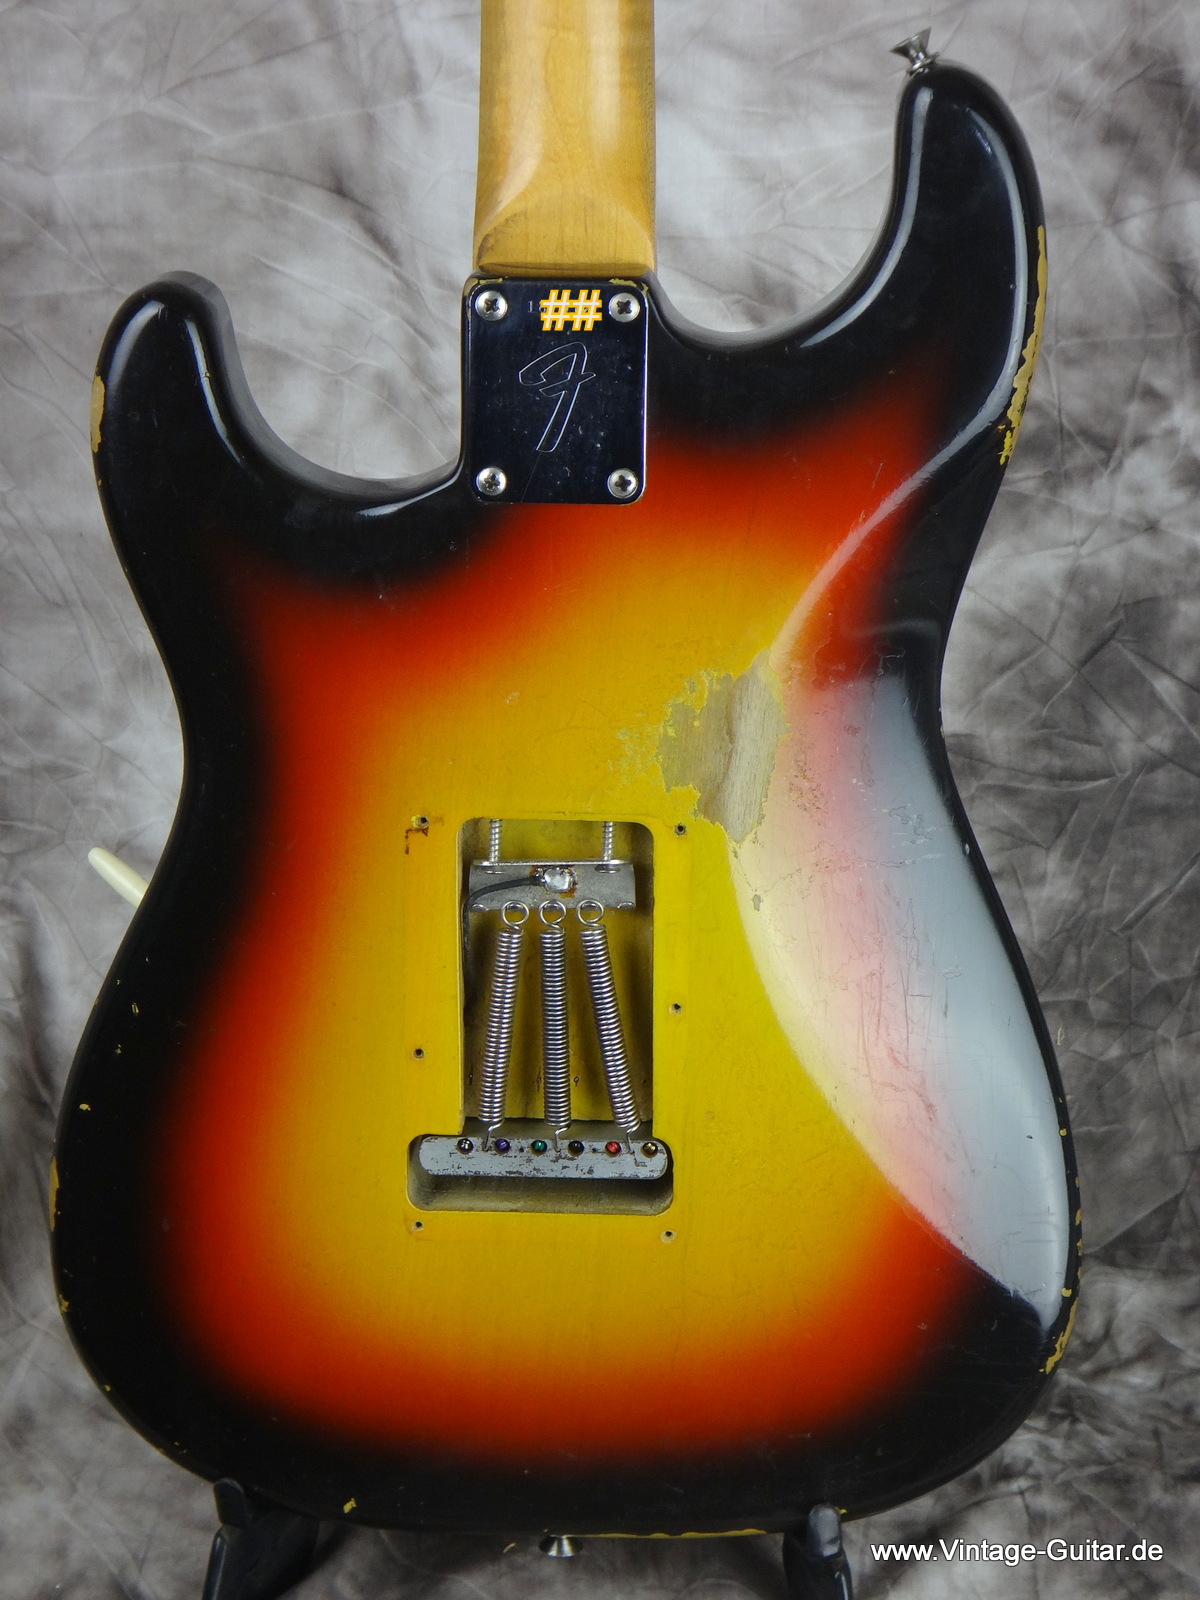 Fender_Stratocaster_1966_sunburst-black-bobbin-pickups-004.JPG